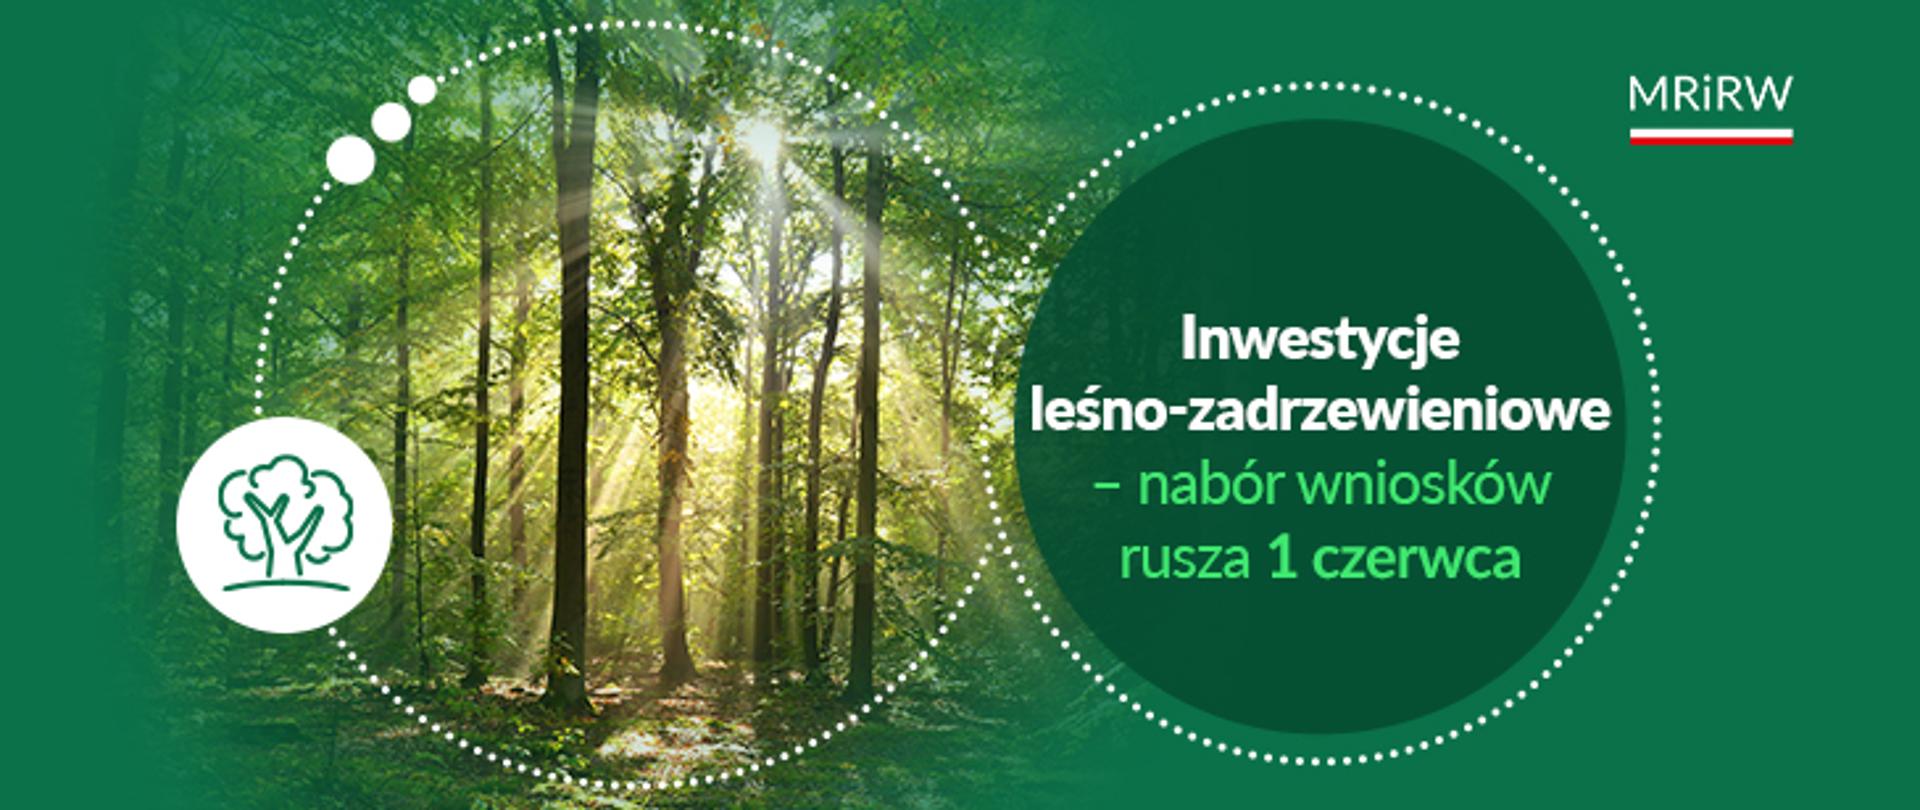 Wsparcie na inwestycje leśno-zadrzewieniowe